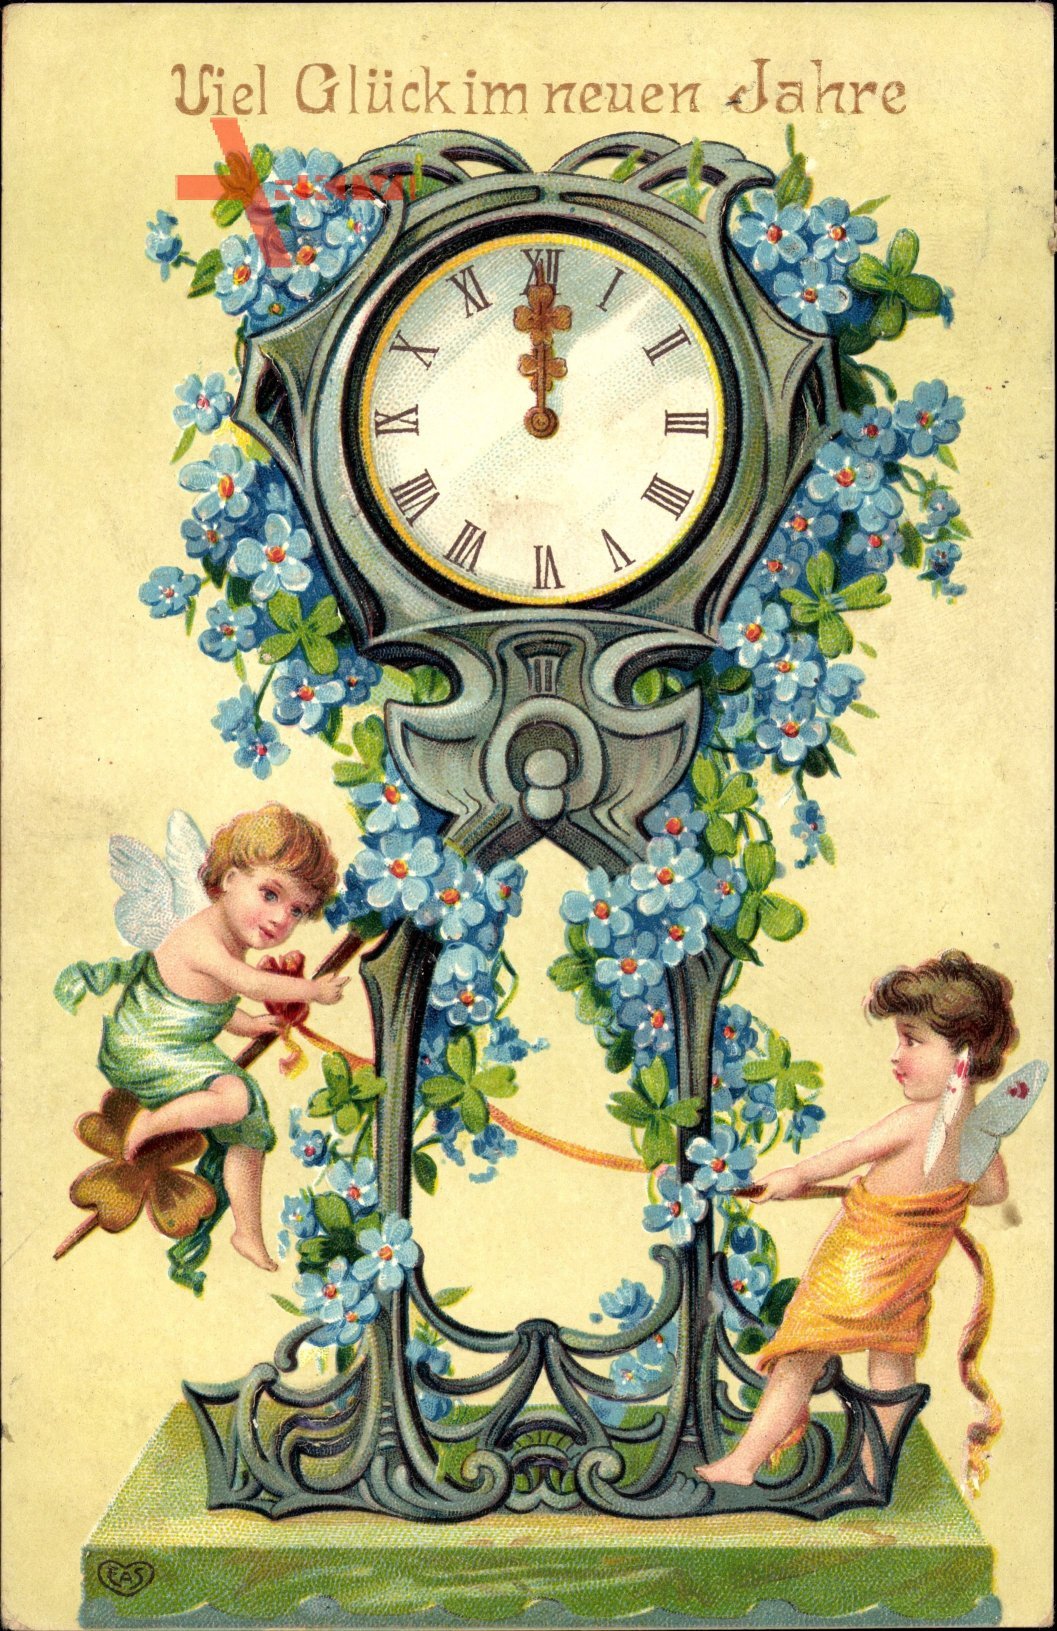 Glückwunsch Neujahr, Uhr, zwei Engel, blaue Blüten